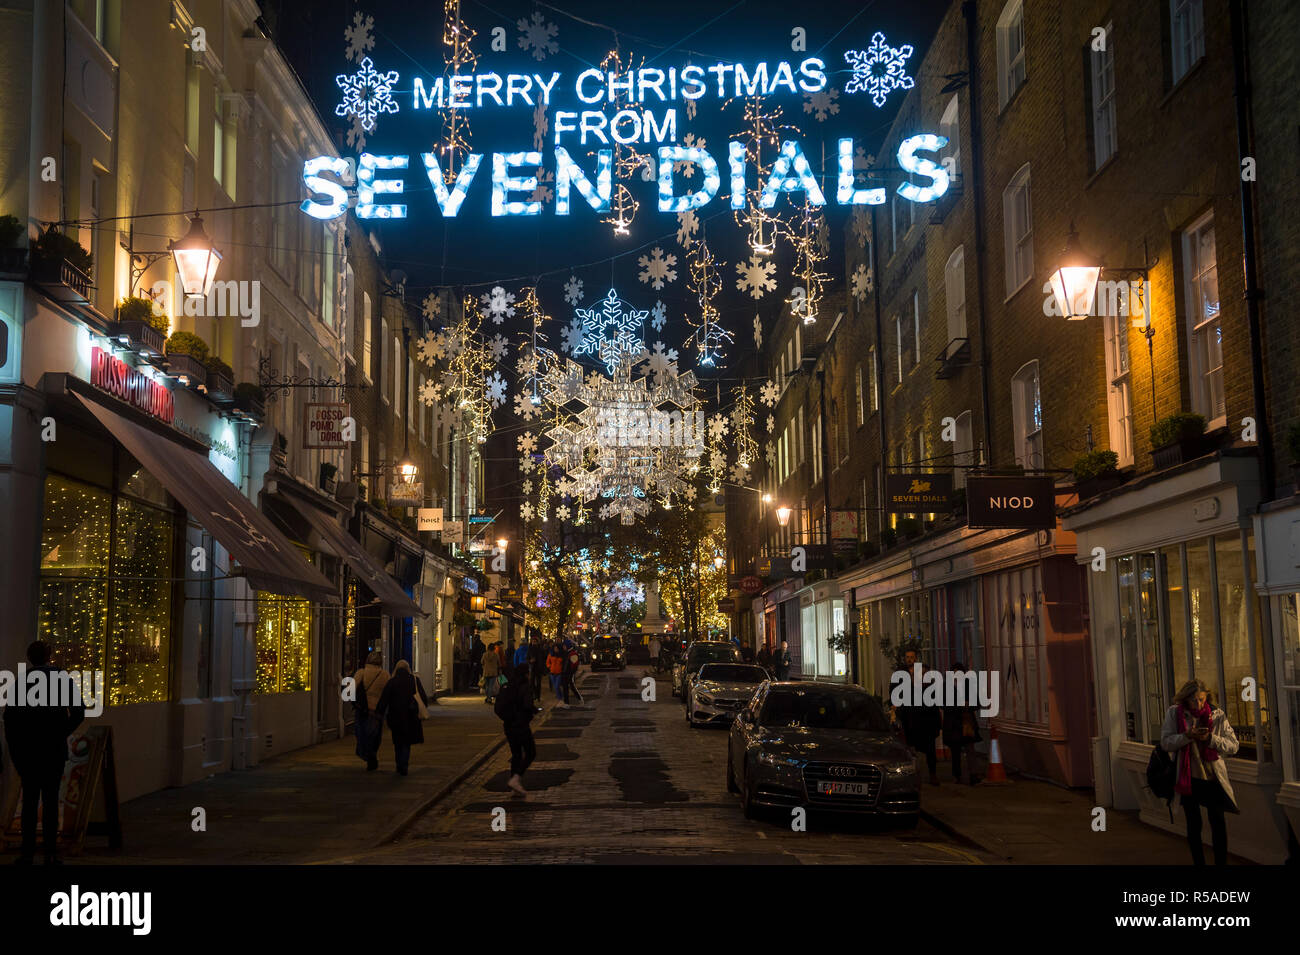 LONDON - November 26, 2018: Frohe Weihnachten von Seven Dials Nachricht hängt mit funkelnden Holiday Lights in der beliebten West End Viertel. Stockfoto